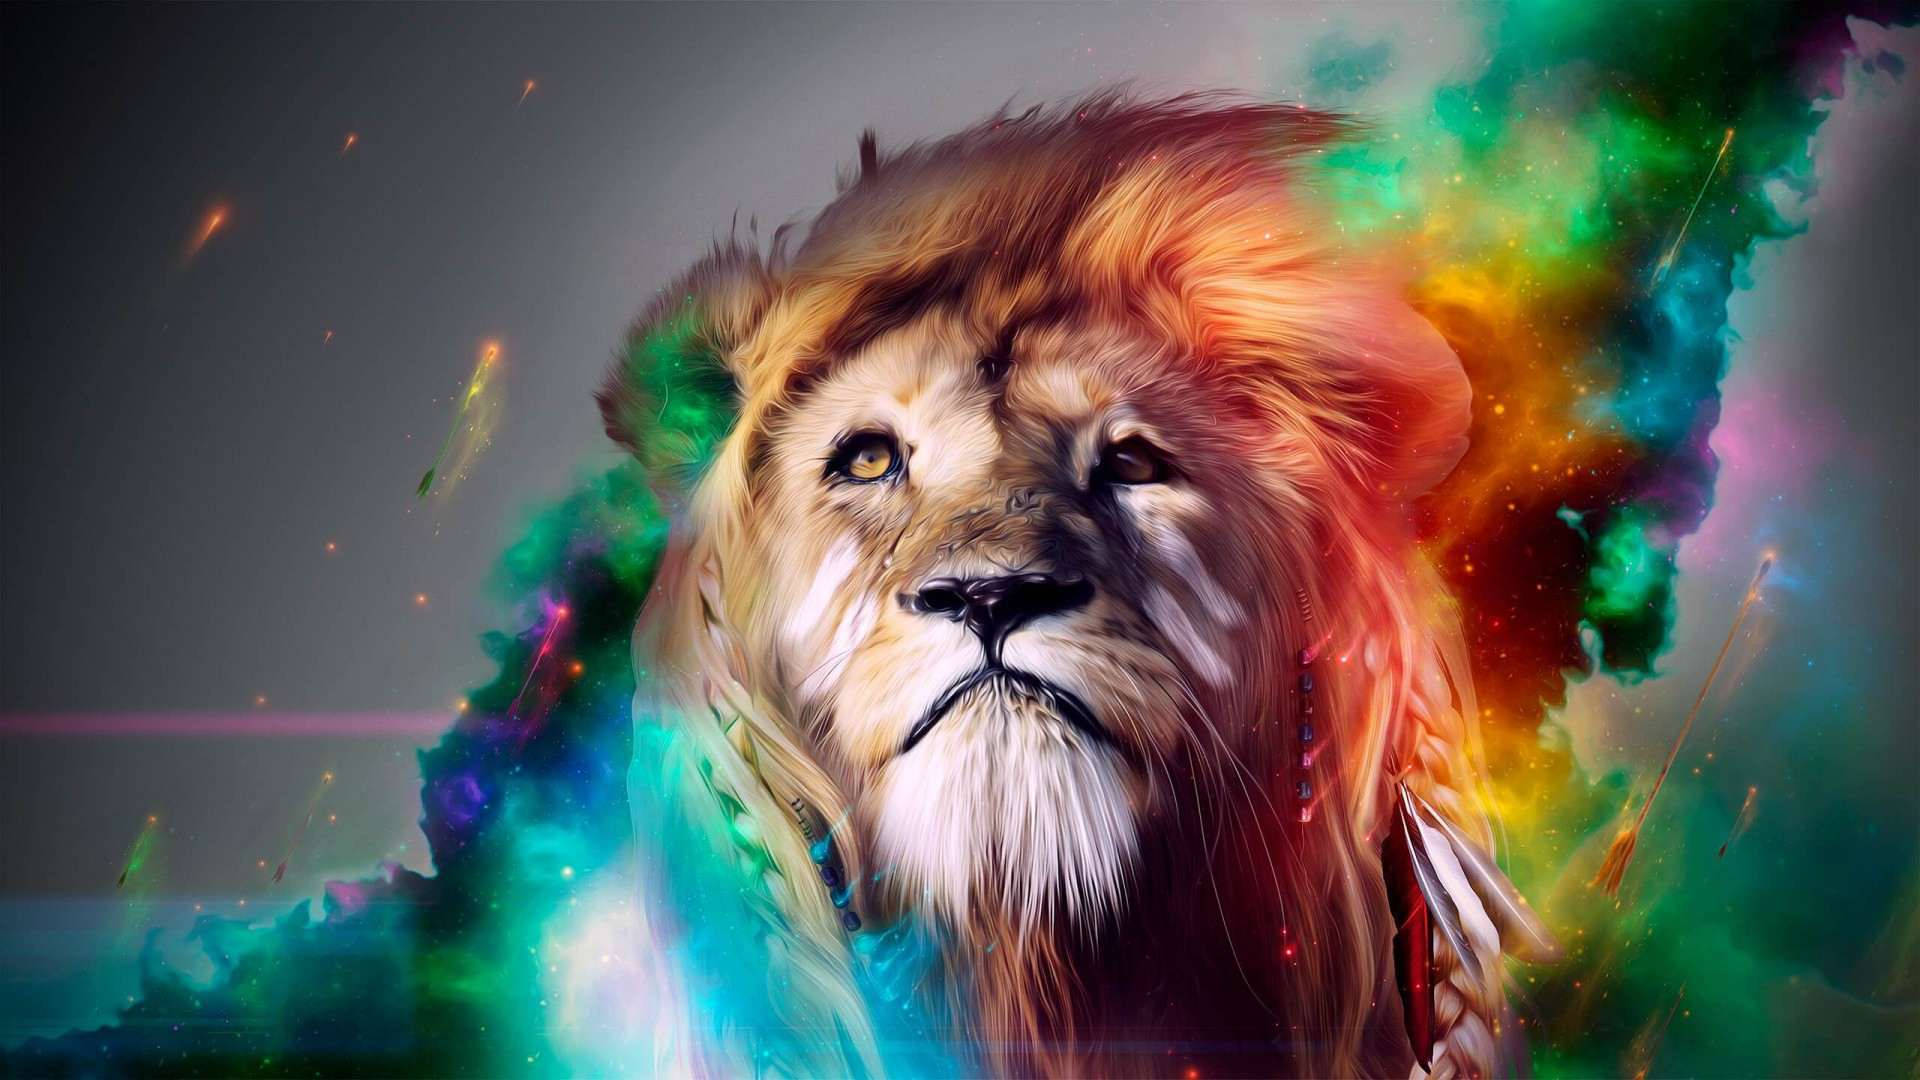 Lion All Best Wallpaper